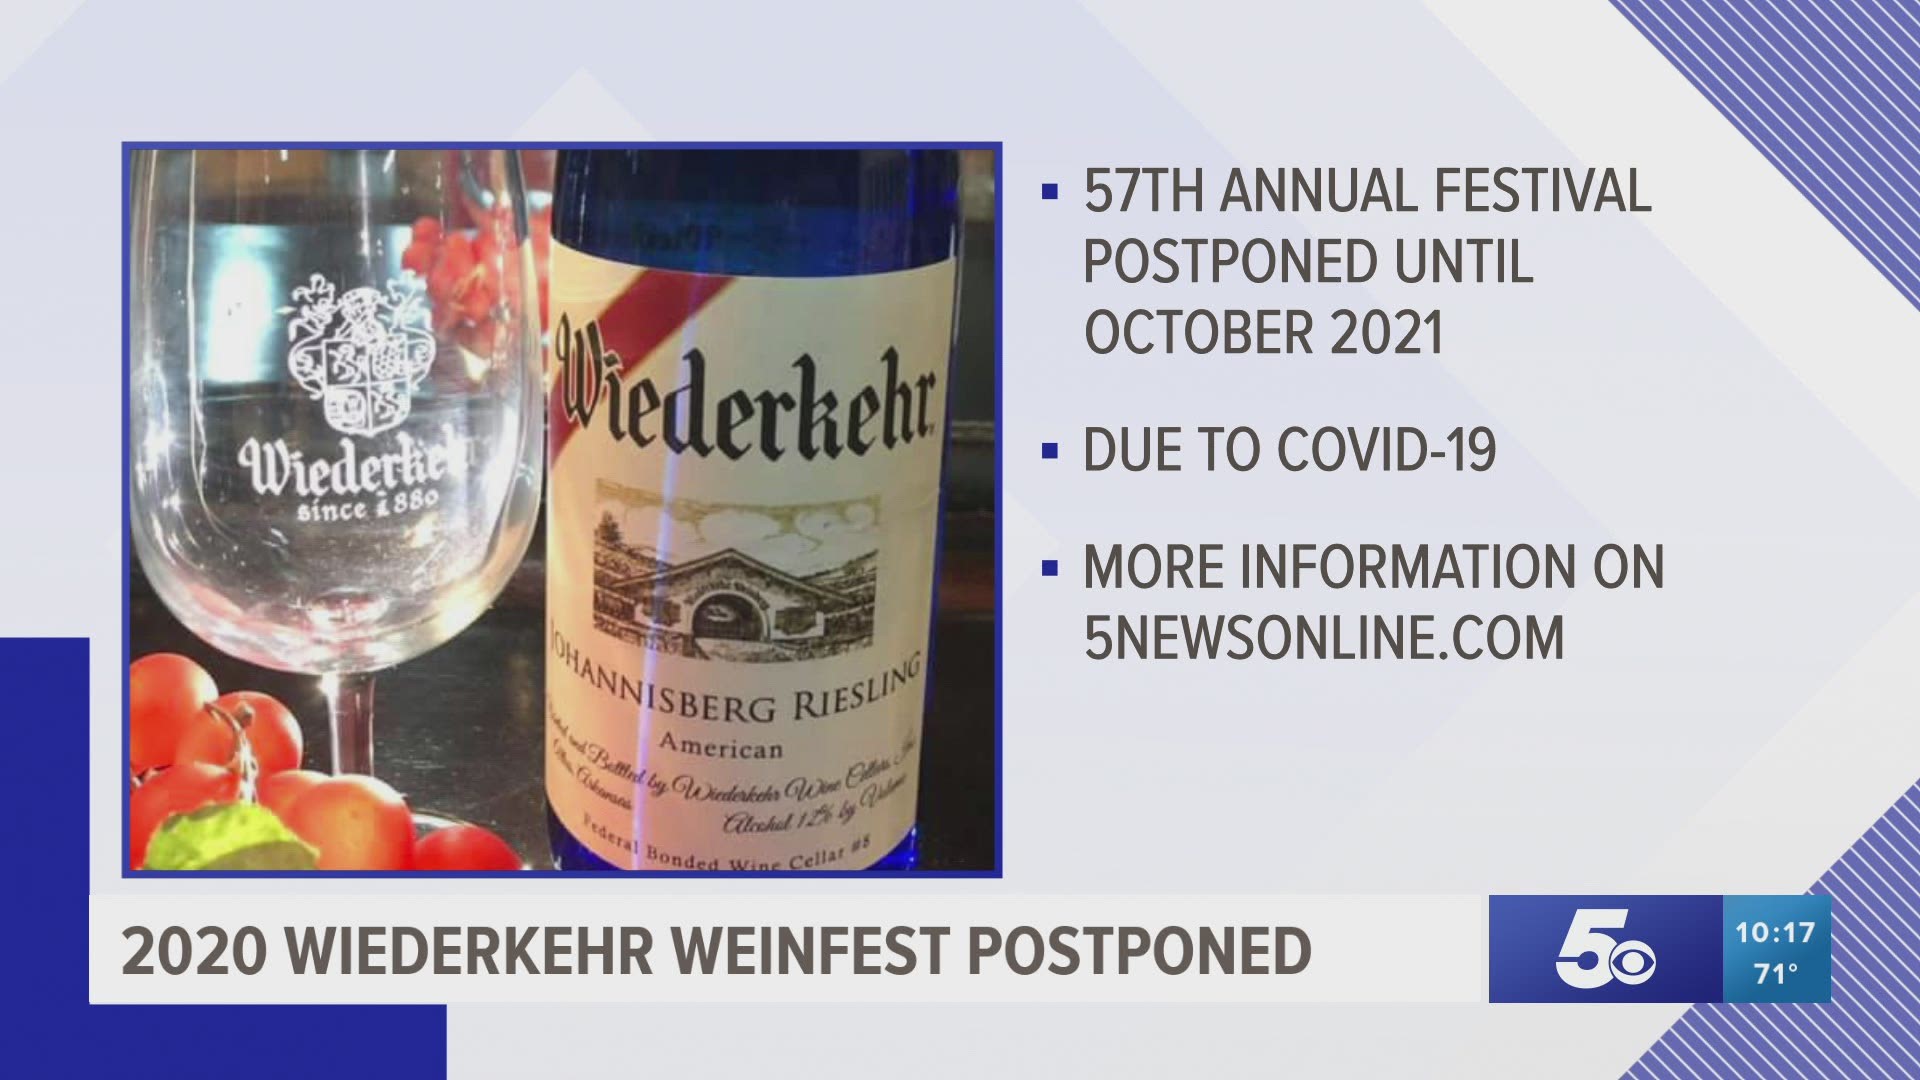 2020 Wiederkehr Weinfest postponed.